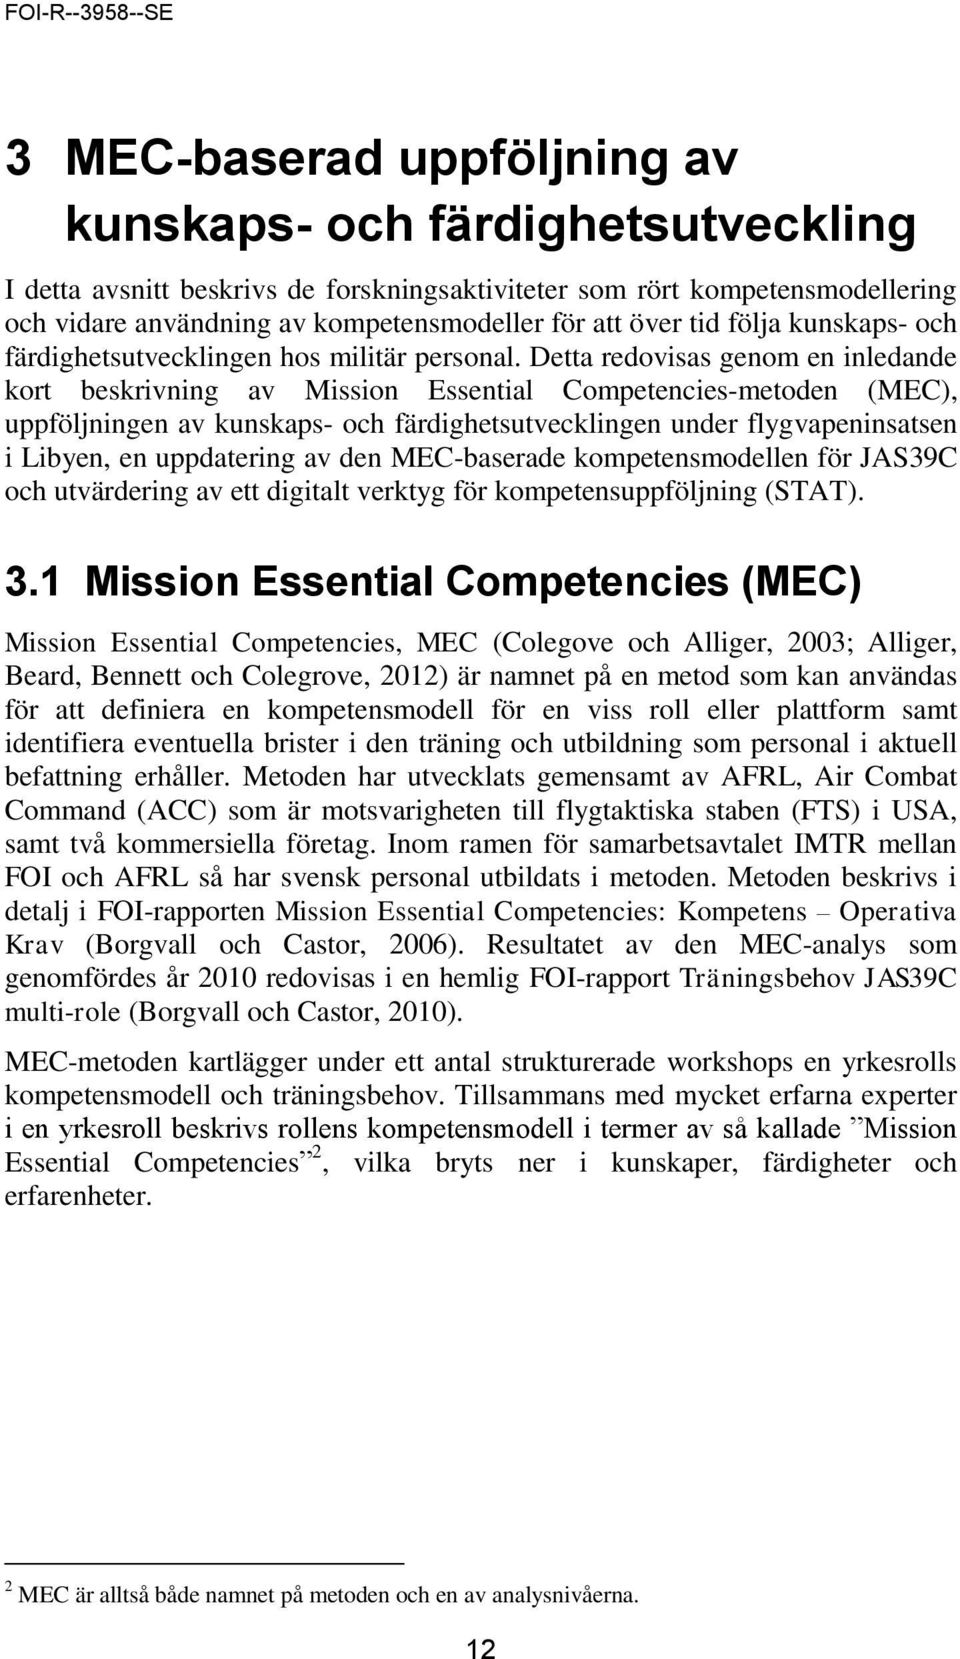 Detta redovisas genom en inledande kort beskrivning av Mission Essential Competencies-metoden (MEC), uppföljningen av kunskaps- och färdighetsutvecklingen under flygvapeninsatsen i Libyen, en